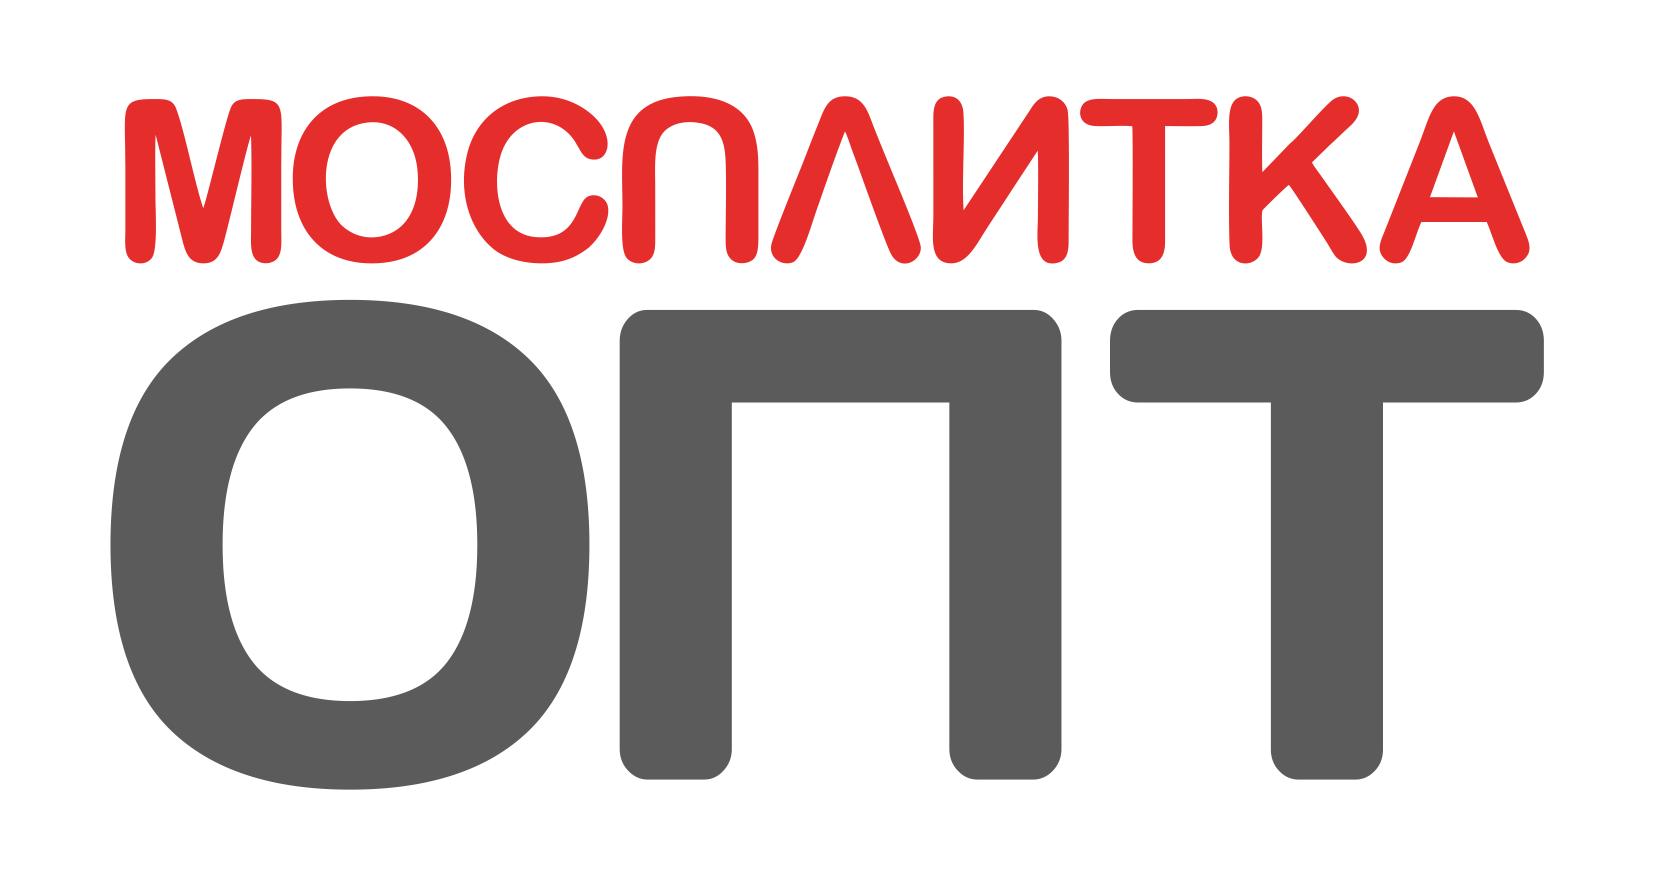 Https mosplitka ru product. Мосплитка лого. Логотип мосплитки. Мосплитка ру. Логотип компании Мосплитка.